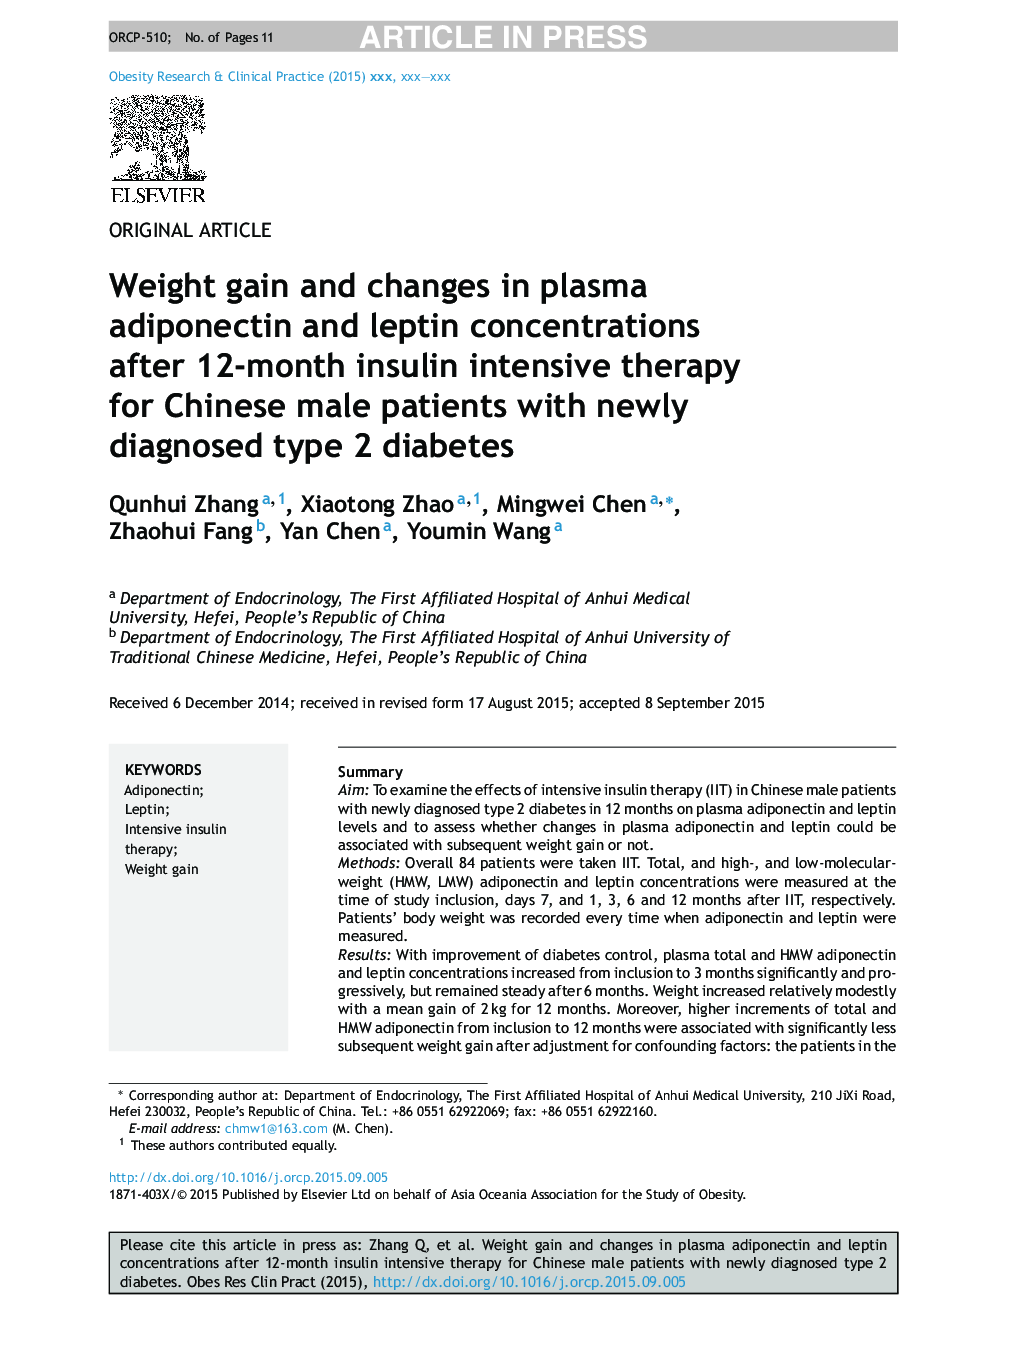 افزایش وزن و تغییرات غلظت آدیپونکتین و لپتین در بیماران پس از 12 ماه درمان شدید انسولین برای بیماران چینی مبتلا به دیابت نوع 2 تازه تشخیص داده شده 